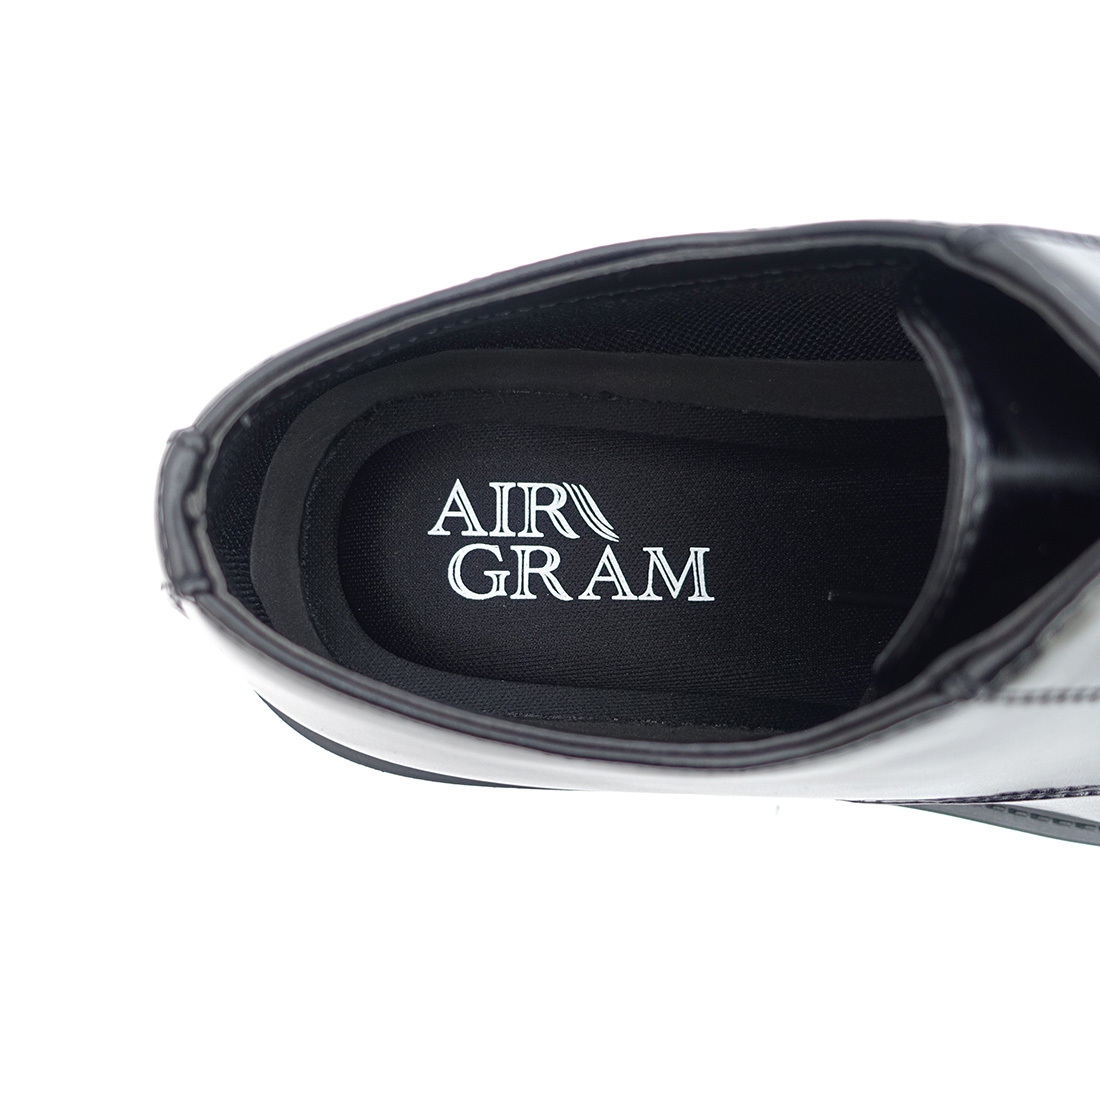 ▲AIR GRAM エアグラム メンズ プレーントゥ ビジネスシューズ 1725 メンズ 紳士靴 革靴 ブラック Black 黒 25.0cm (0910010701-bk-s250)_画像8